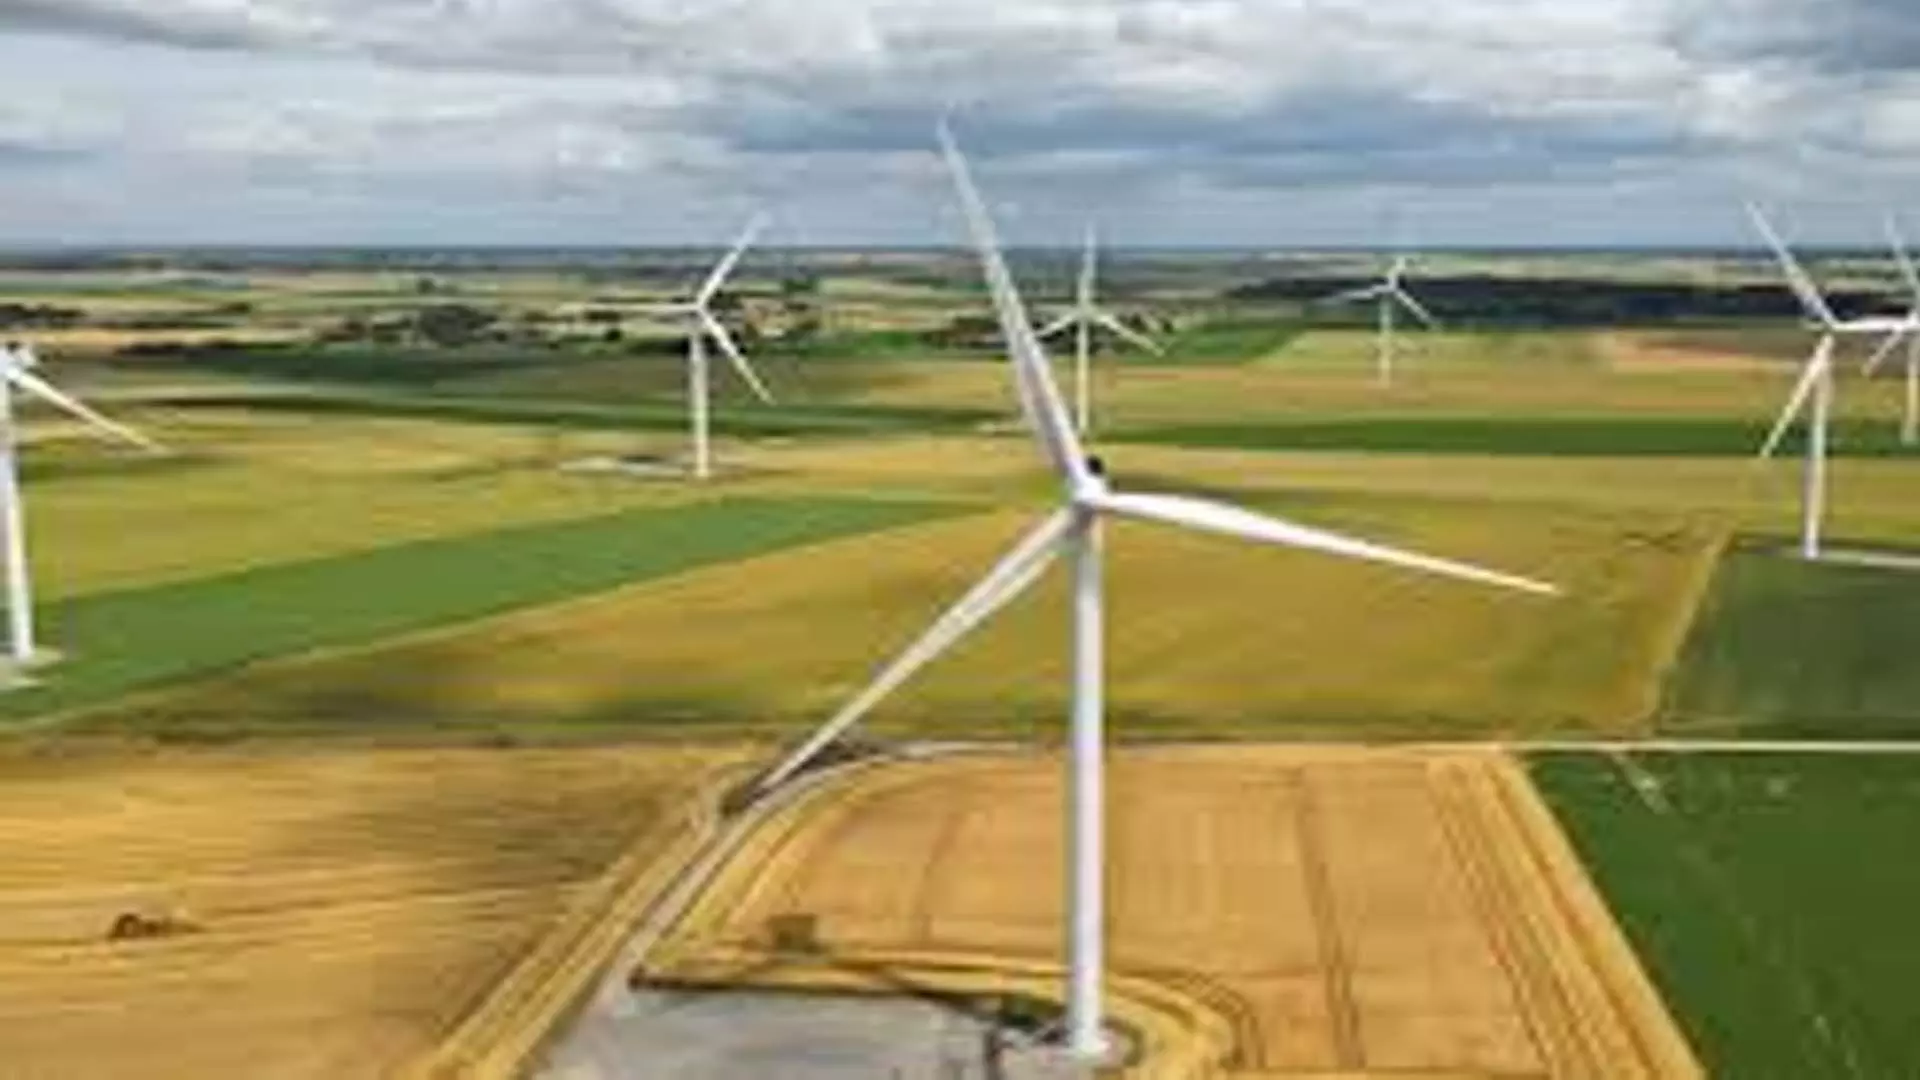 Tamil Nadu News: पवन ऊर्जा क्षमता वृद्धि में तमिलनाडु तीसरे स्थान पर